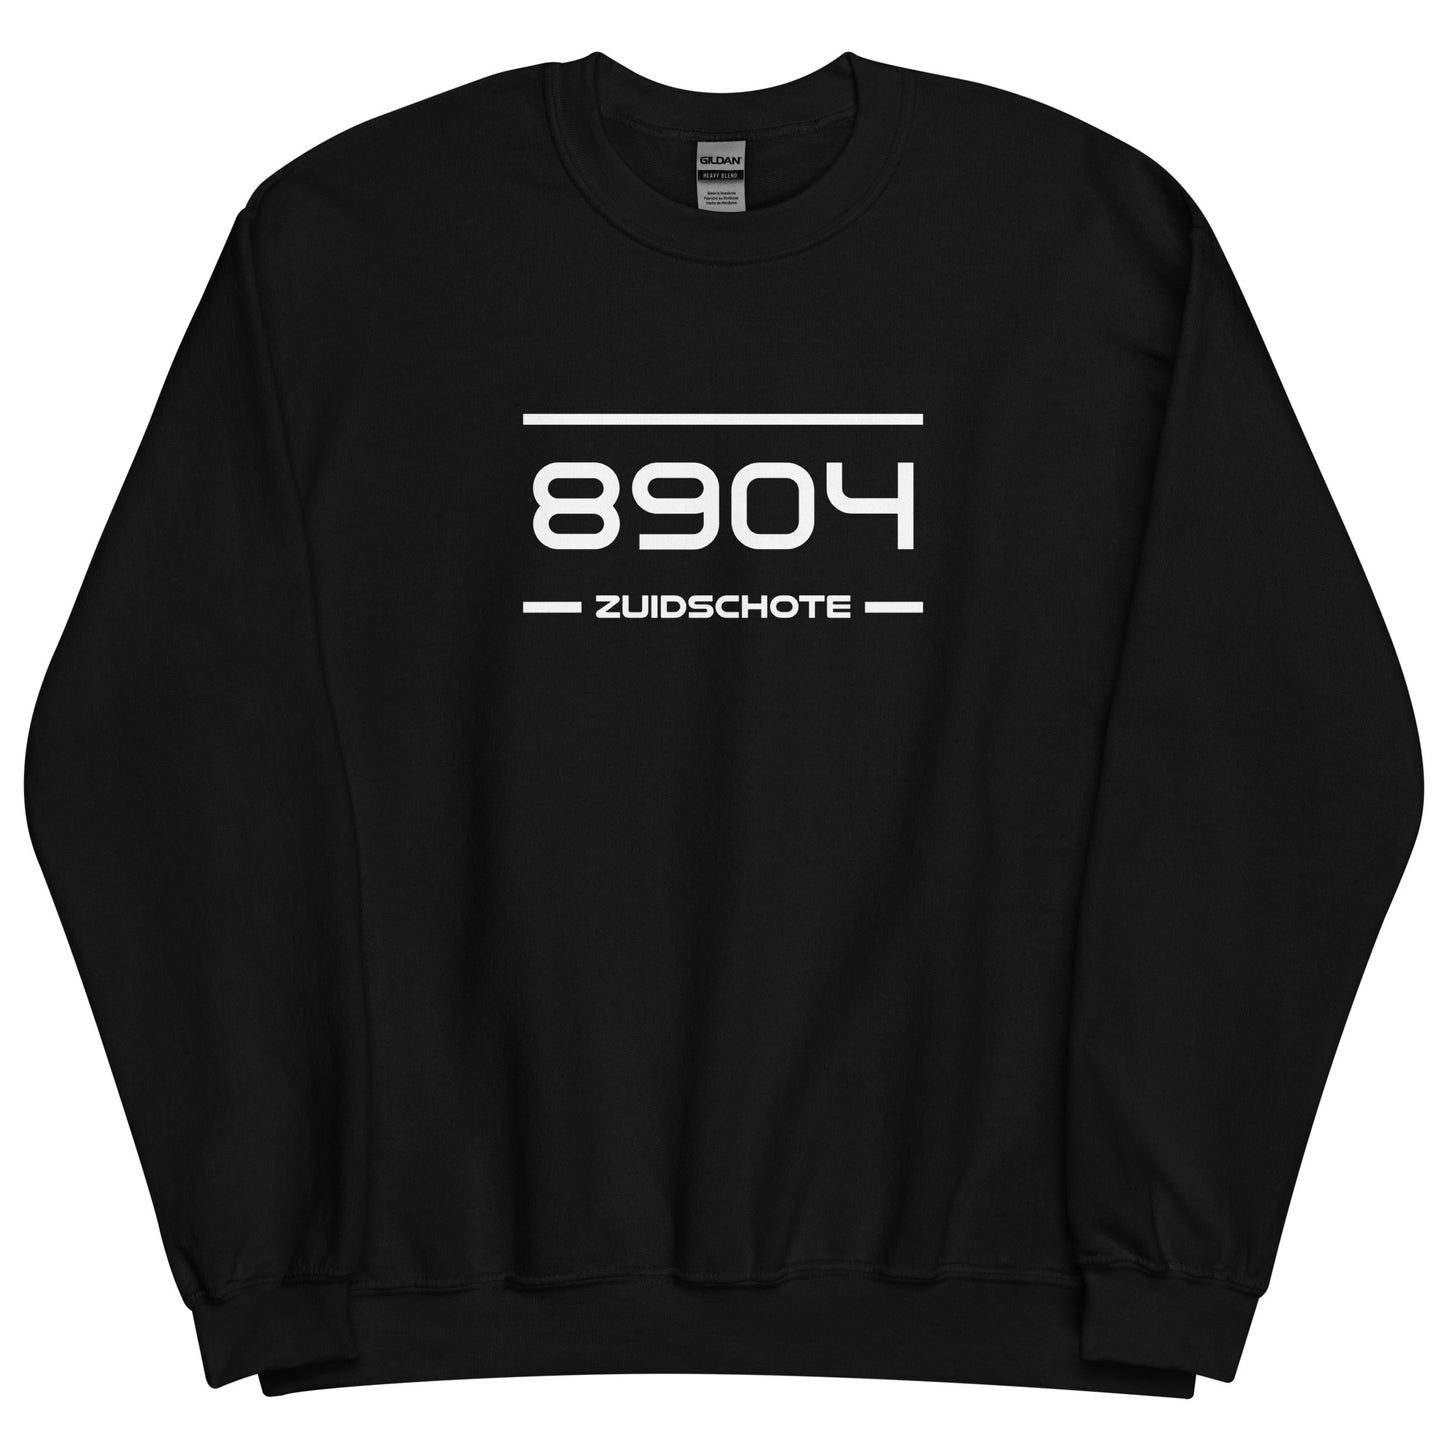 Sweater - 8904 - Zuidschote (M/V)